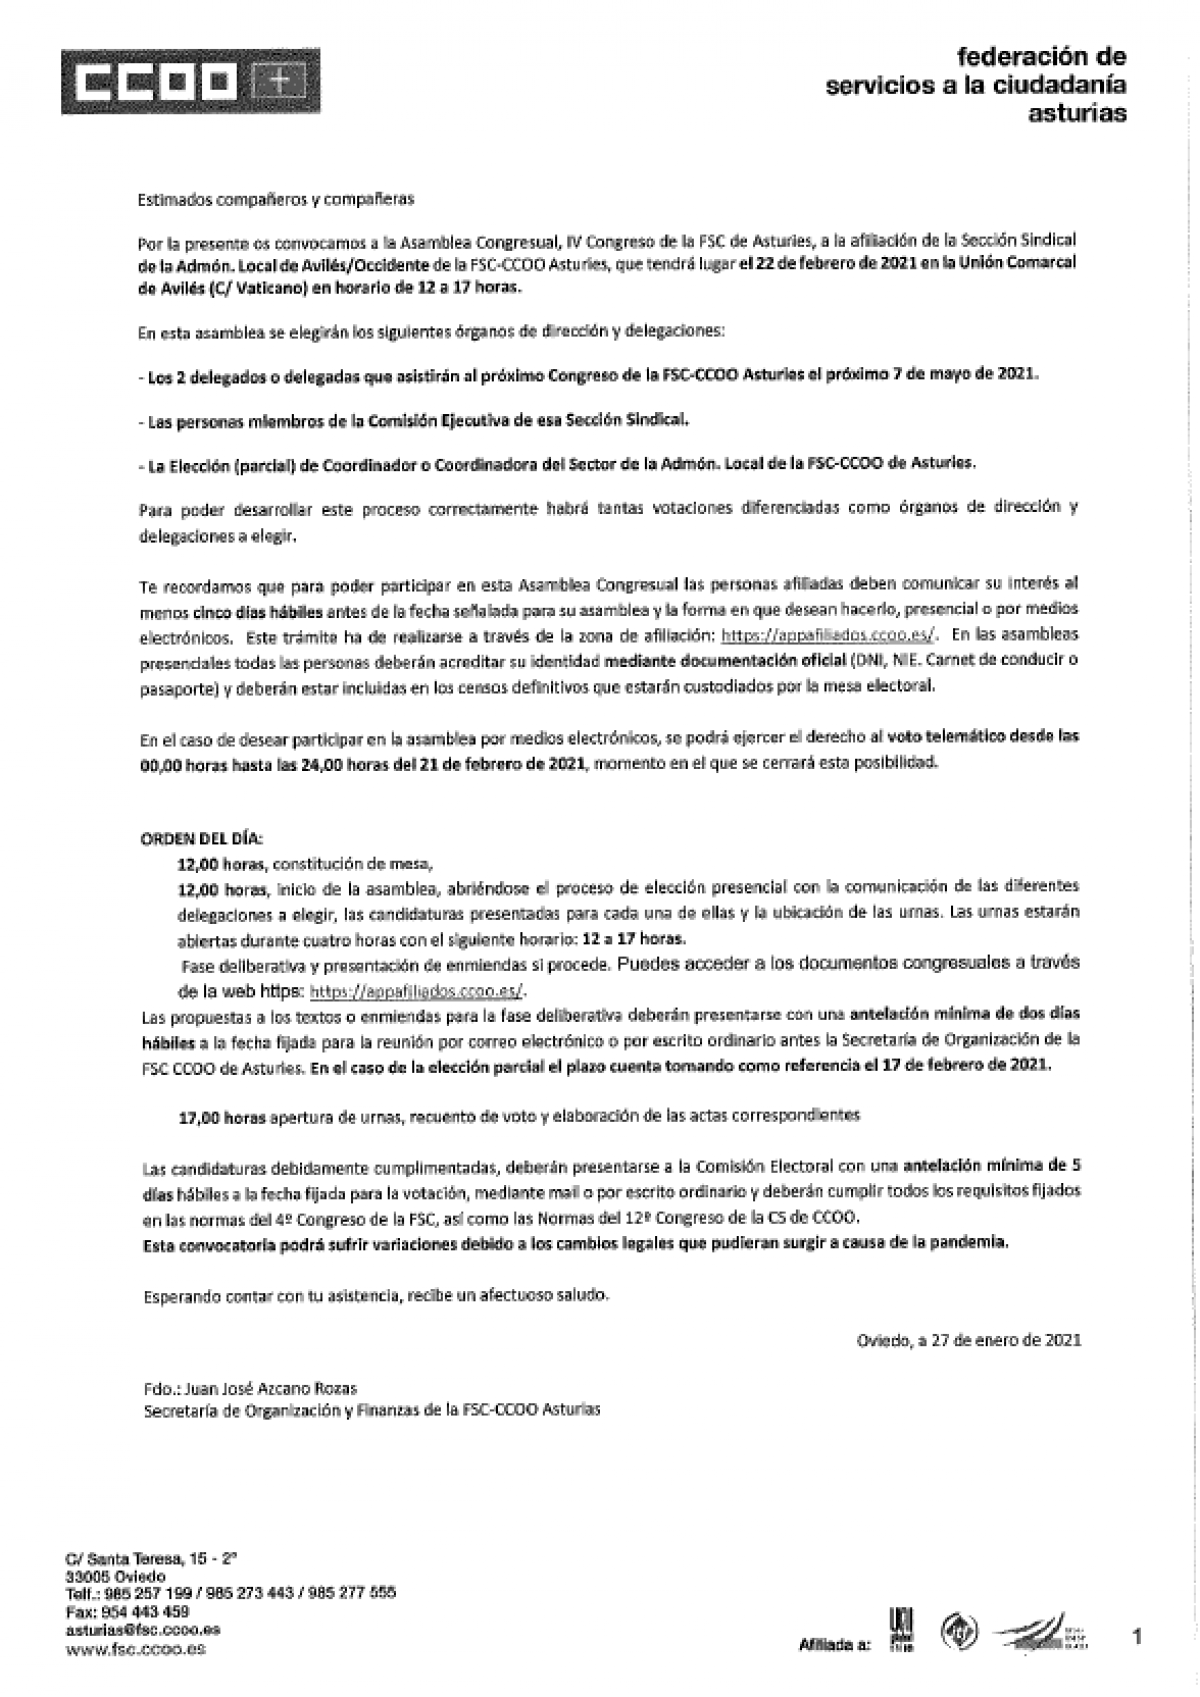 Convocatoria asamblea SS Admón Local Avilés 22-02-2021. FSC Asturias